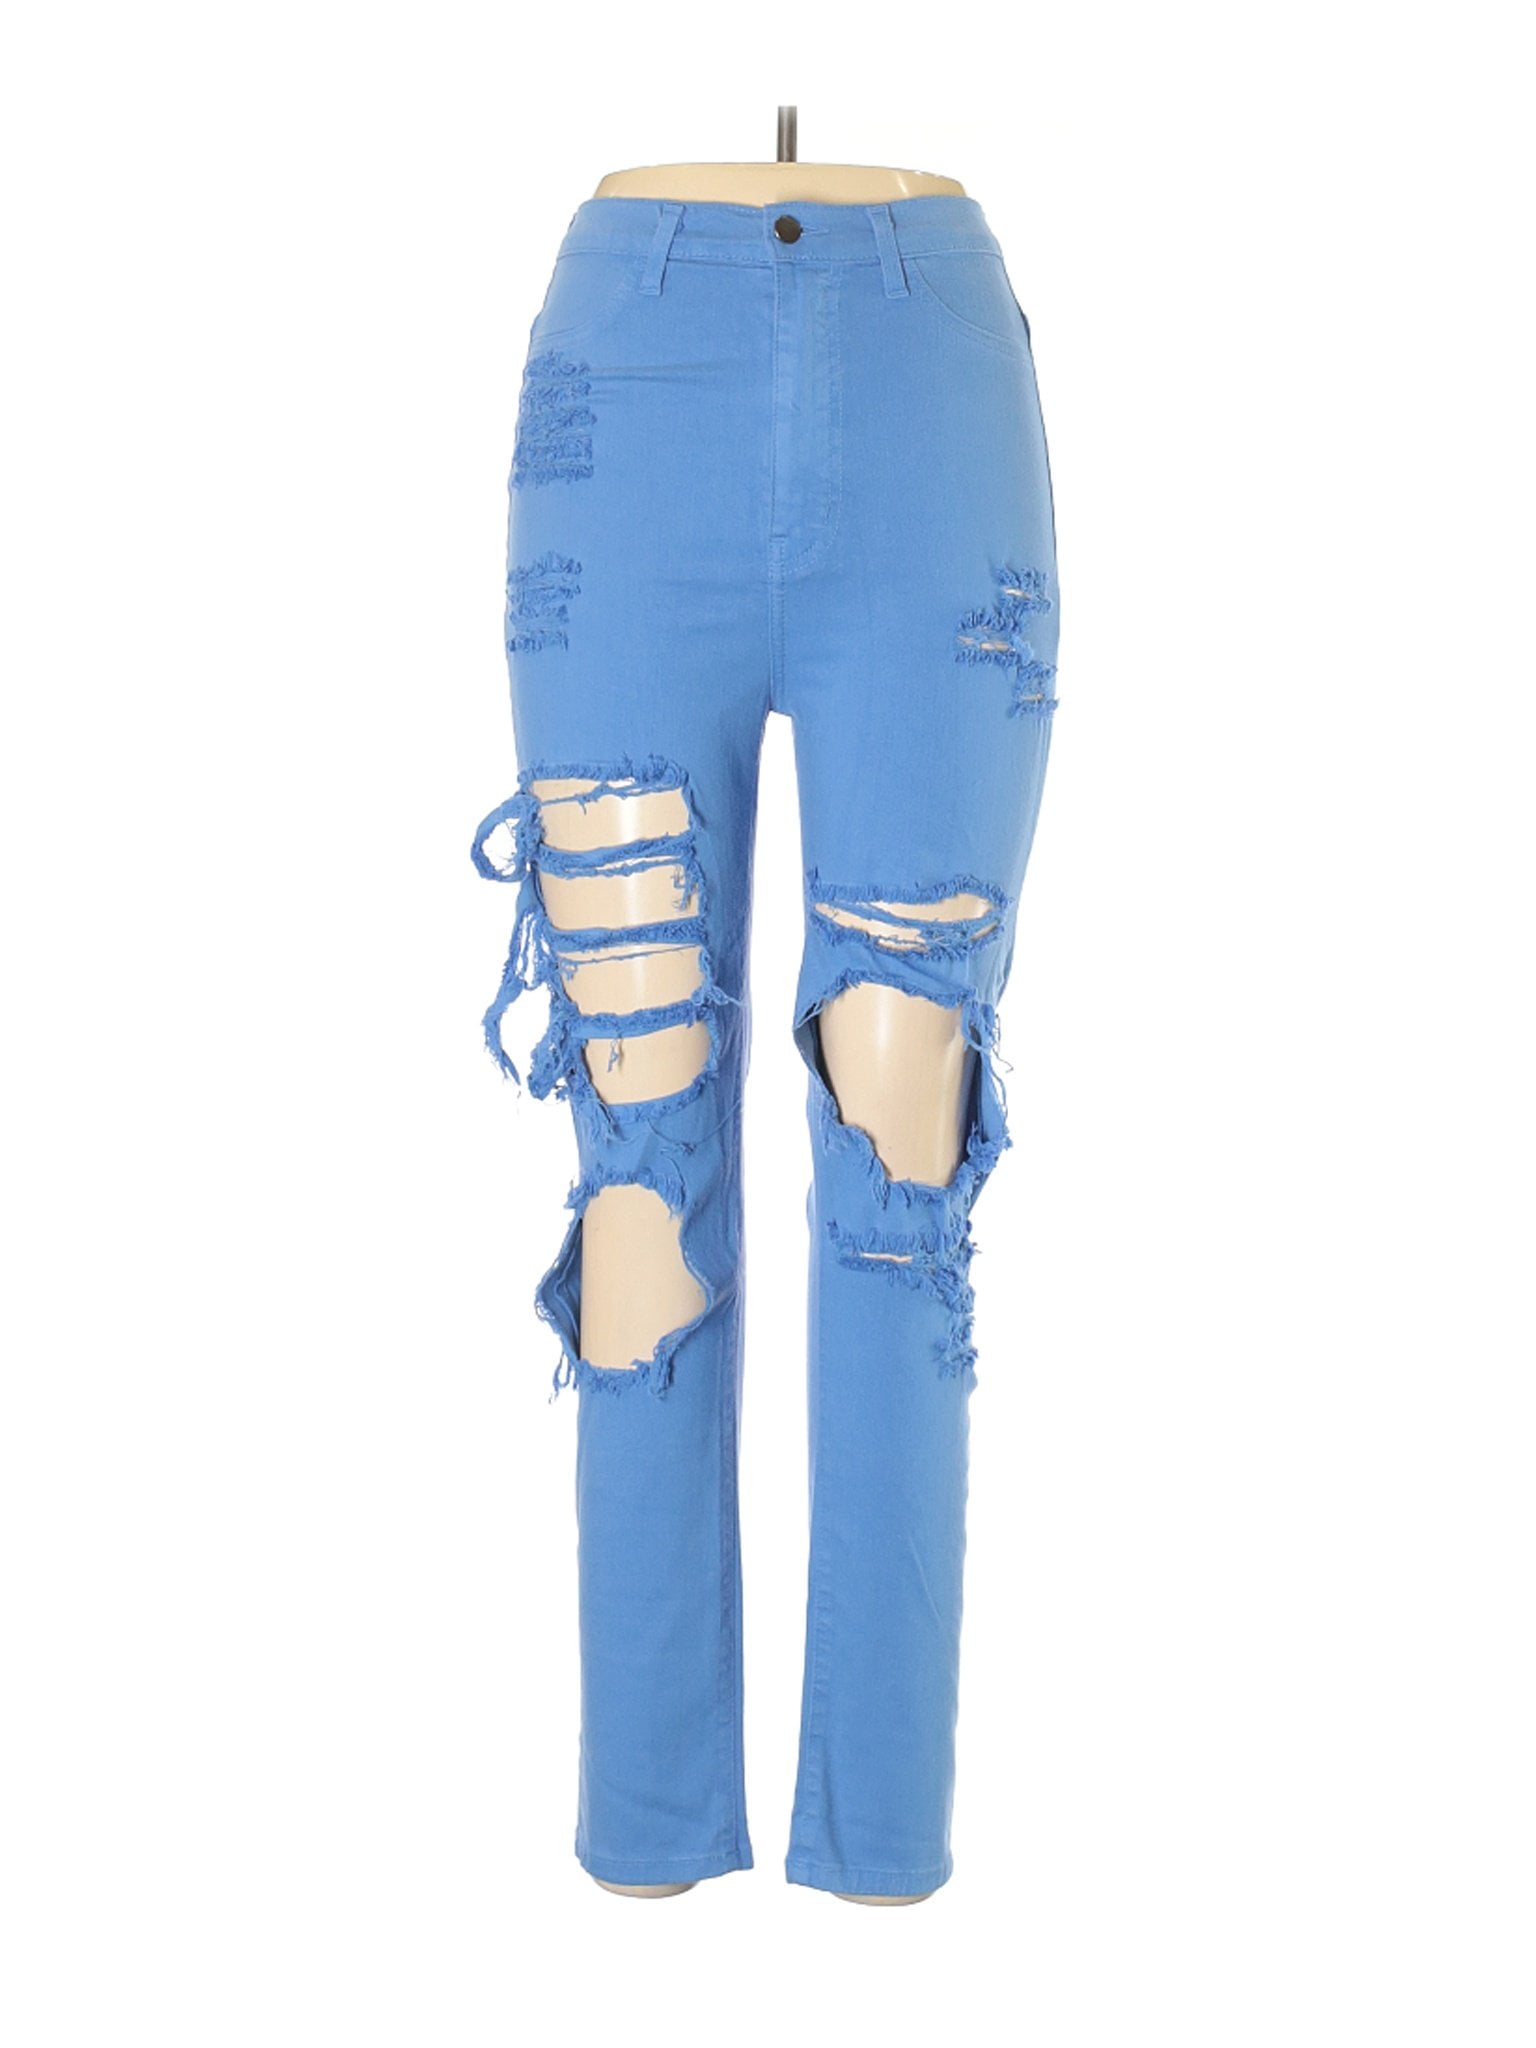 fashion nova size 13 jeans